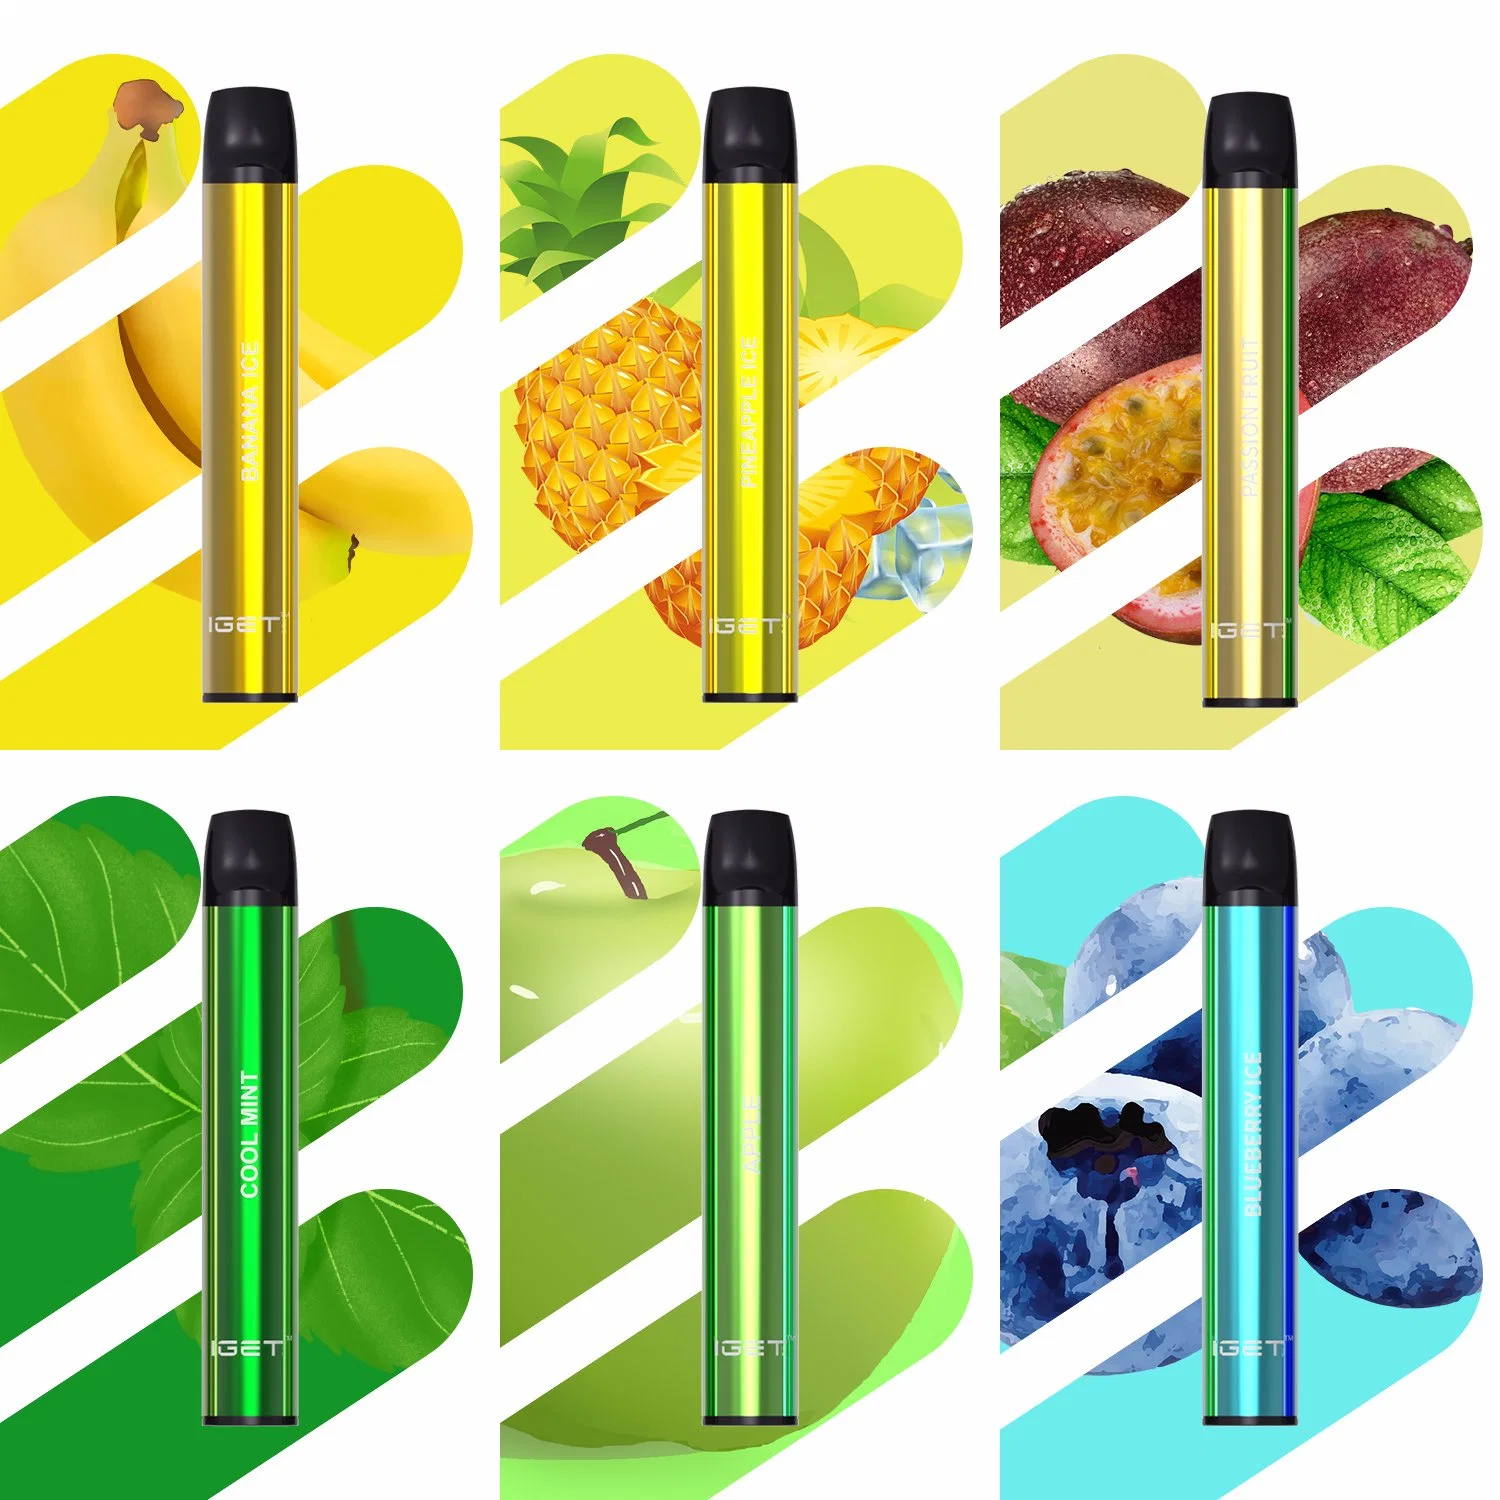 Iget Shion Disposable Vape Pen 600 Puffs 2.4ml Wholesale Price Gift Package Fruit Flavor E CIGS Vape Pen